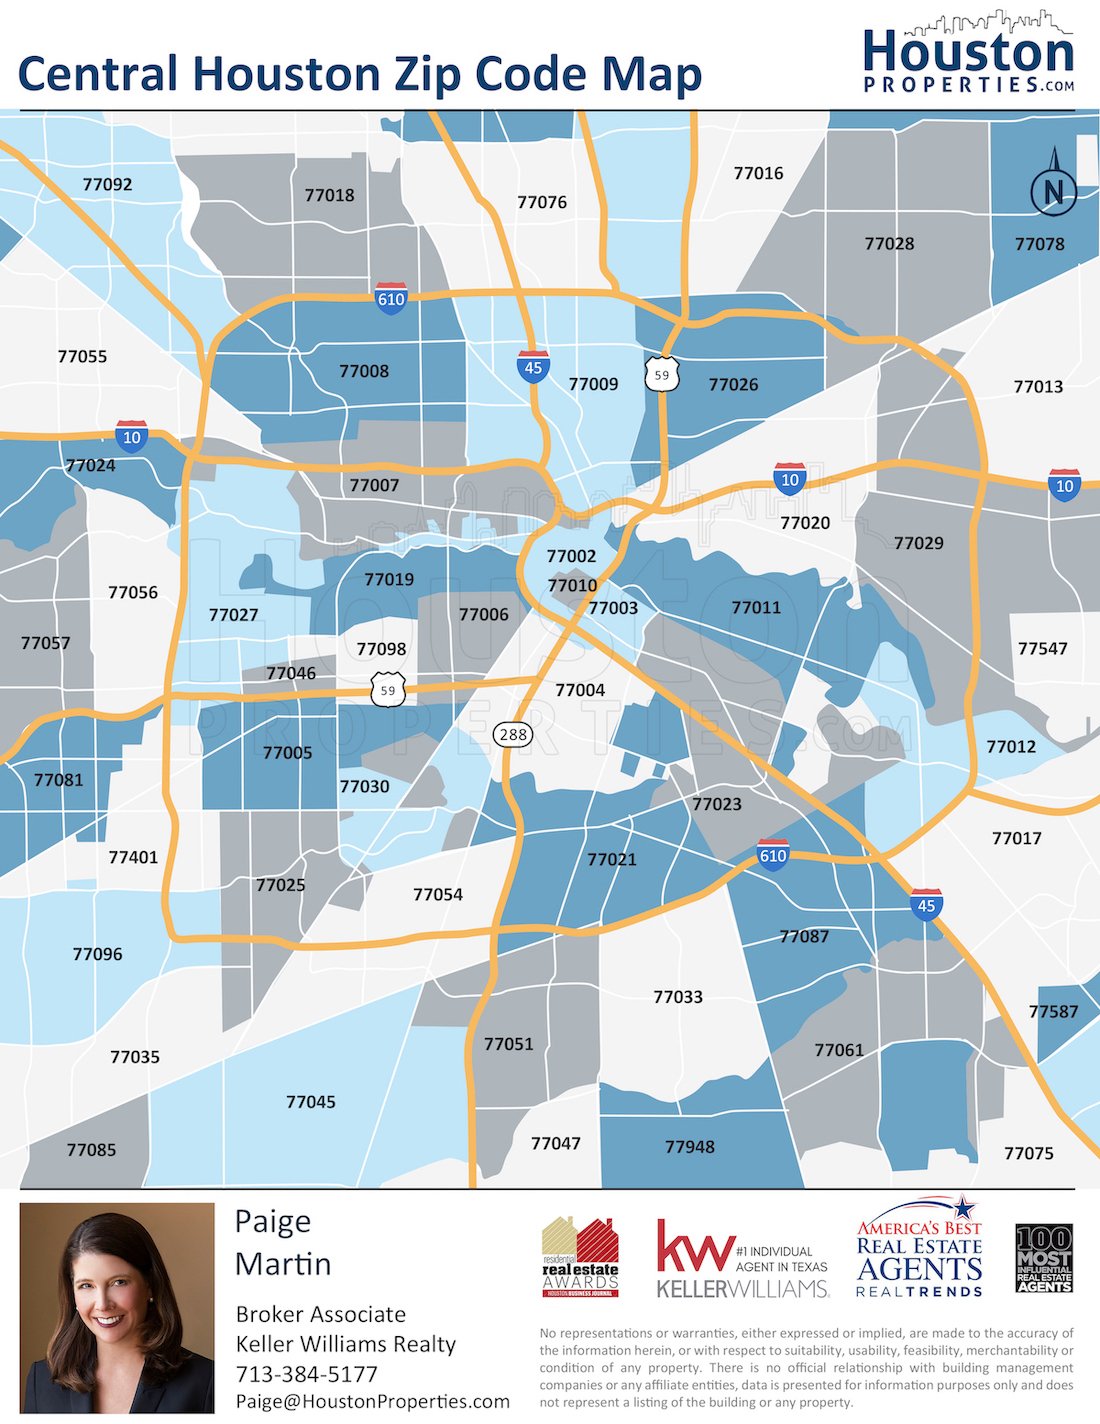 2020 Update: Houston Texas Zip Code Map | HoustonProperties